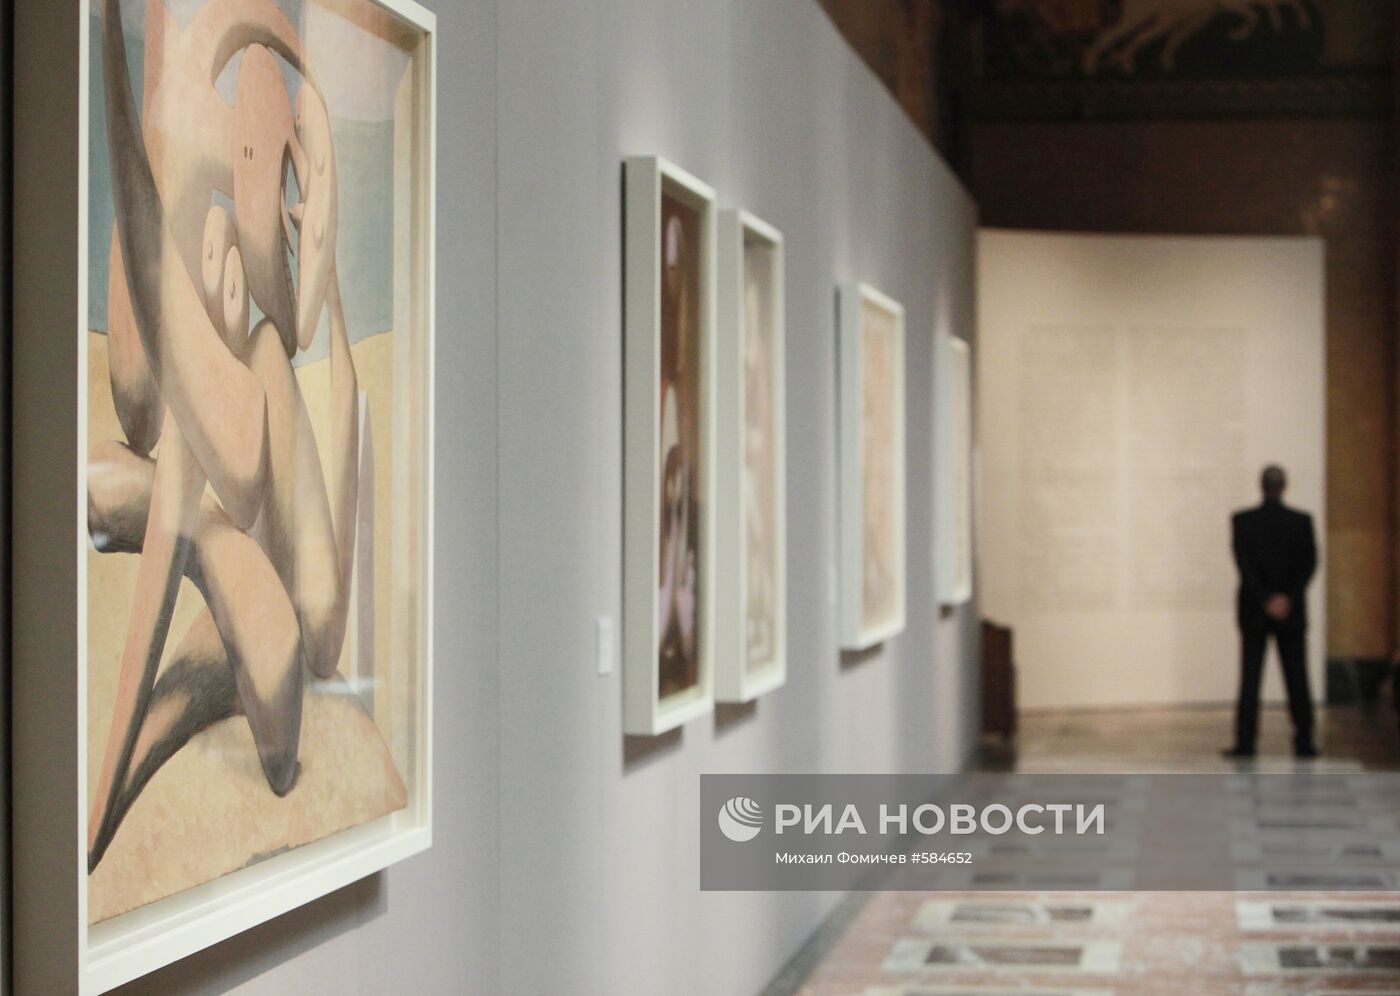 Выставка "Пикассо в России" в ГМИИ им.А.С.Пушкина